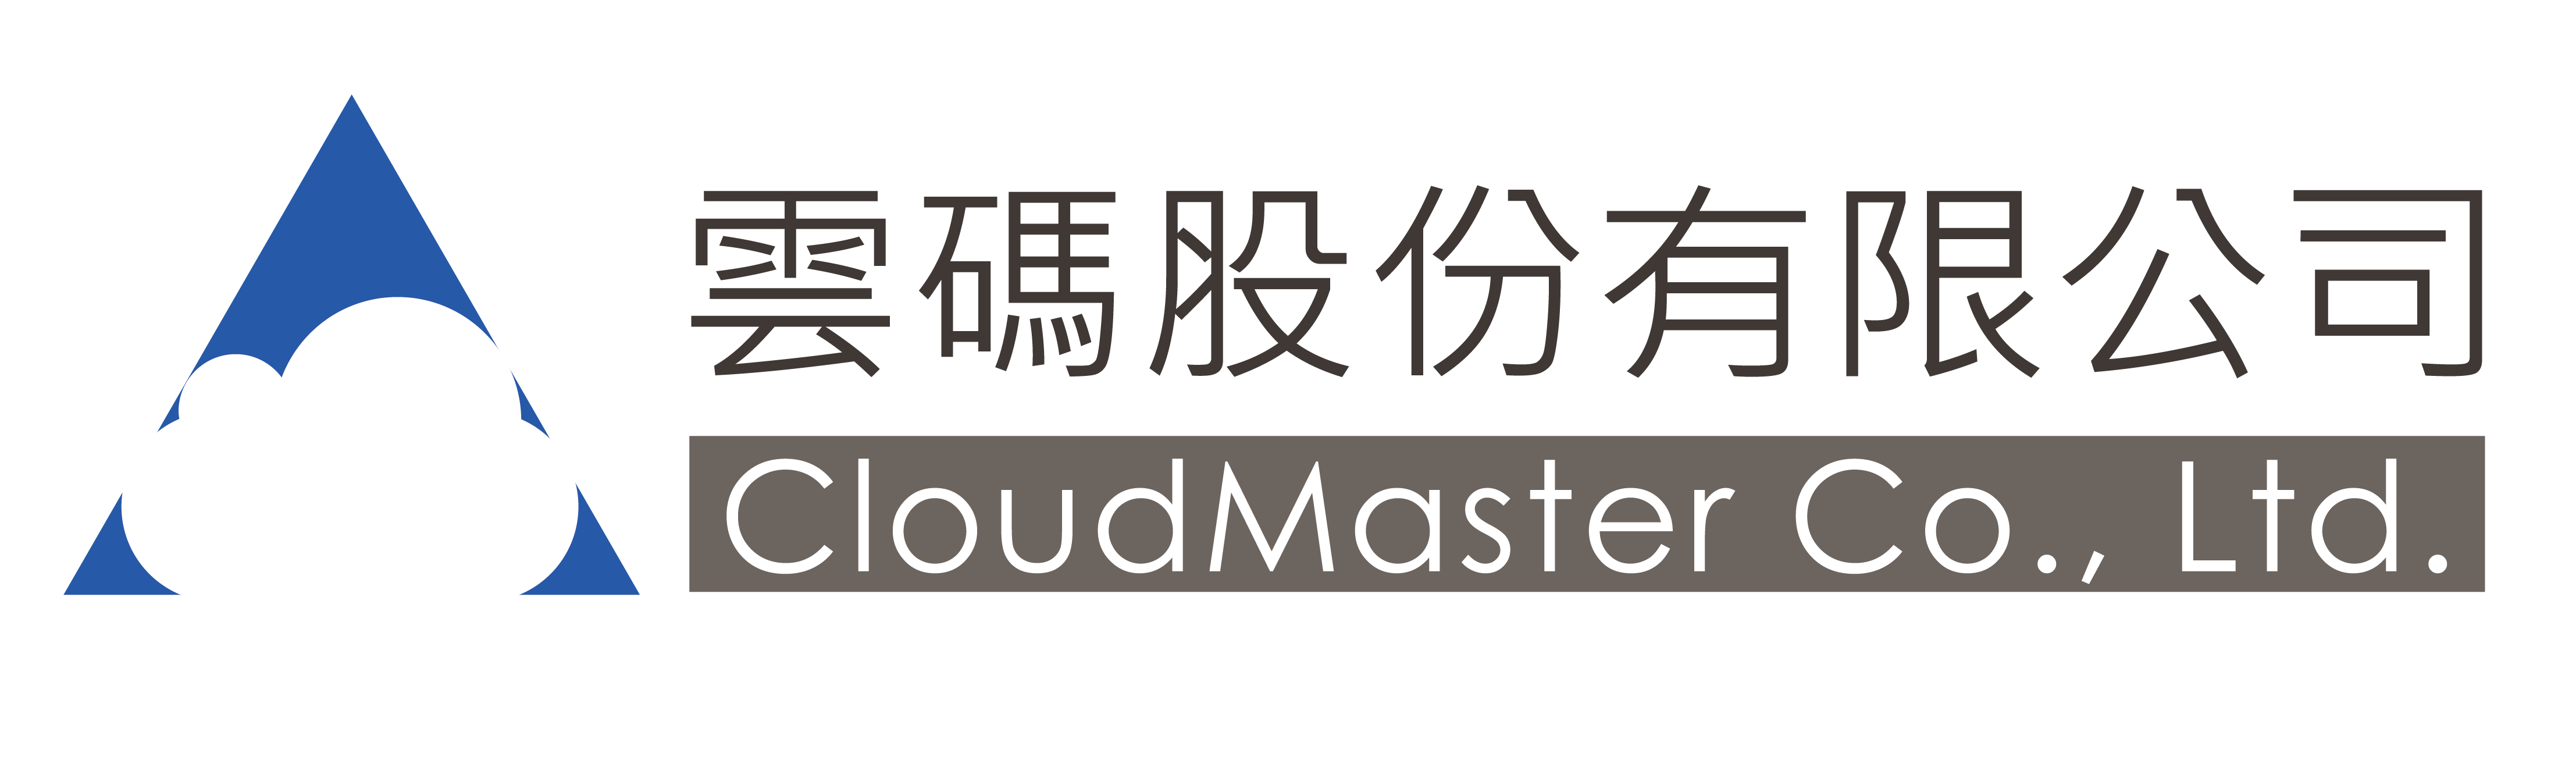 雲碼股份有限公司 CloudMaster